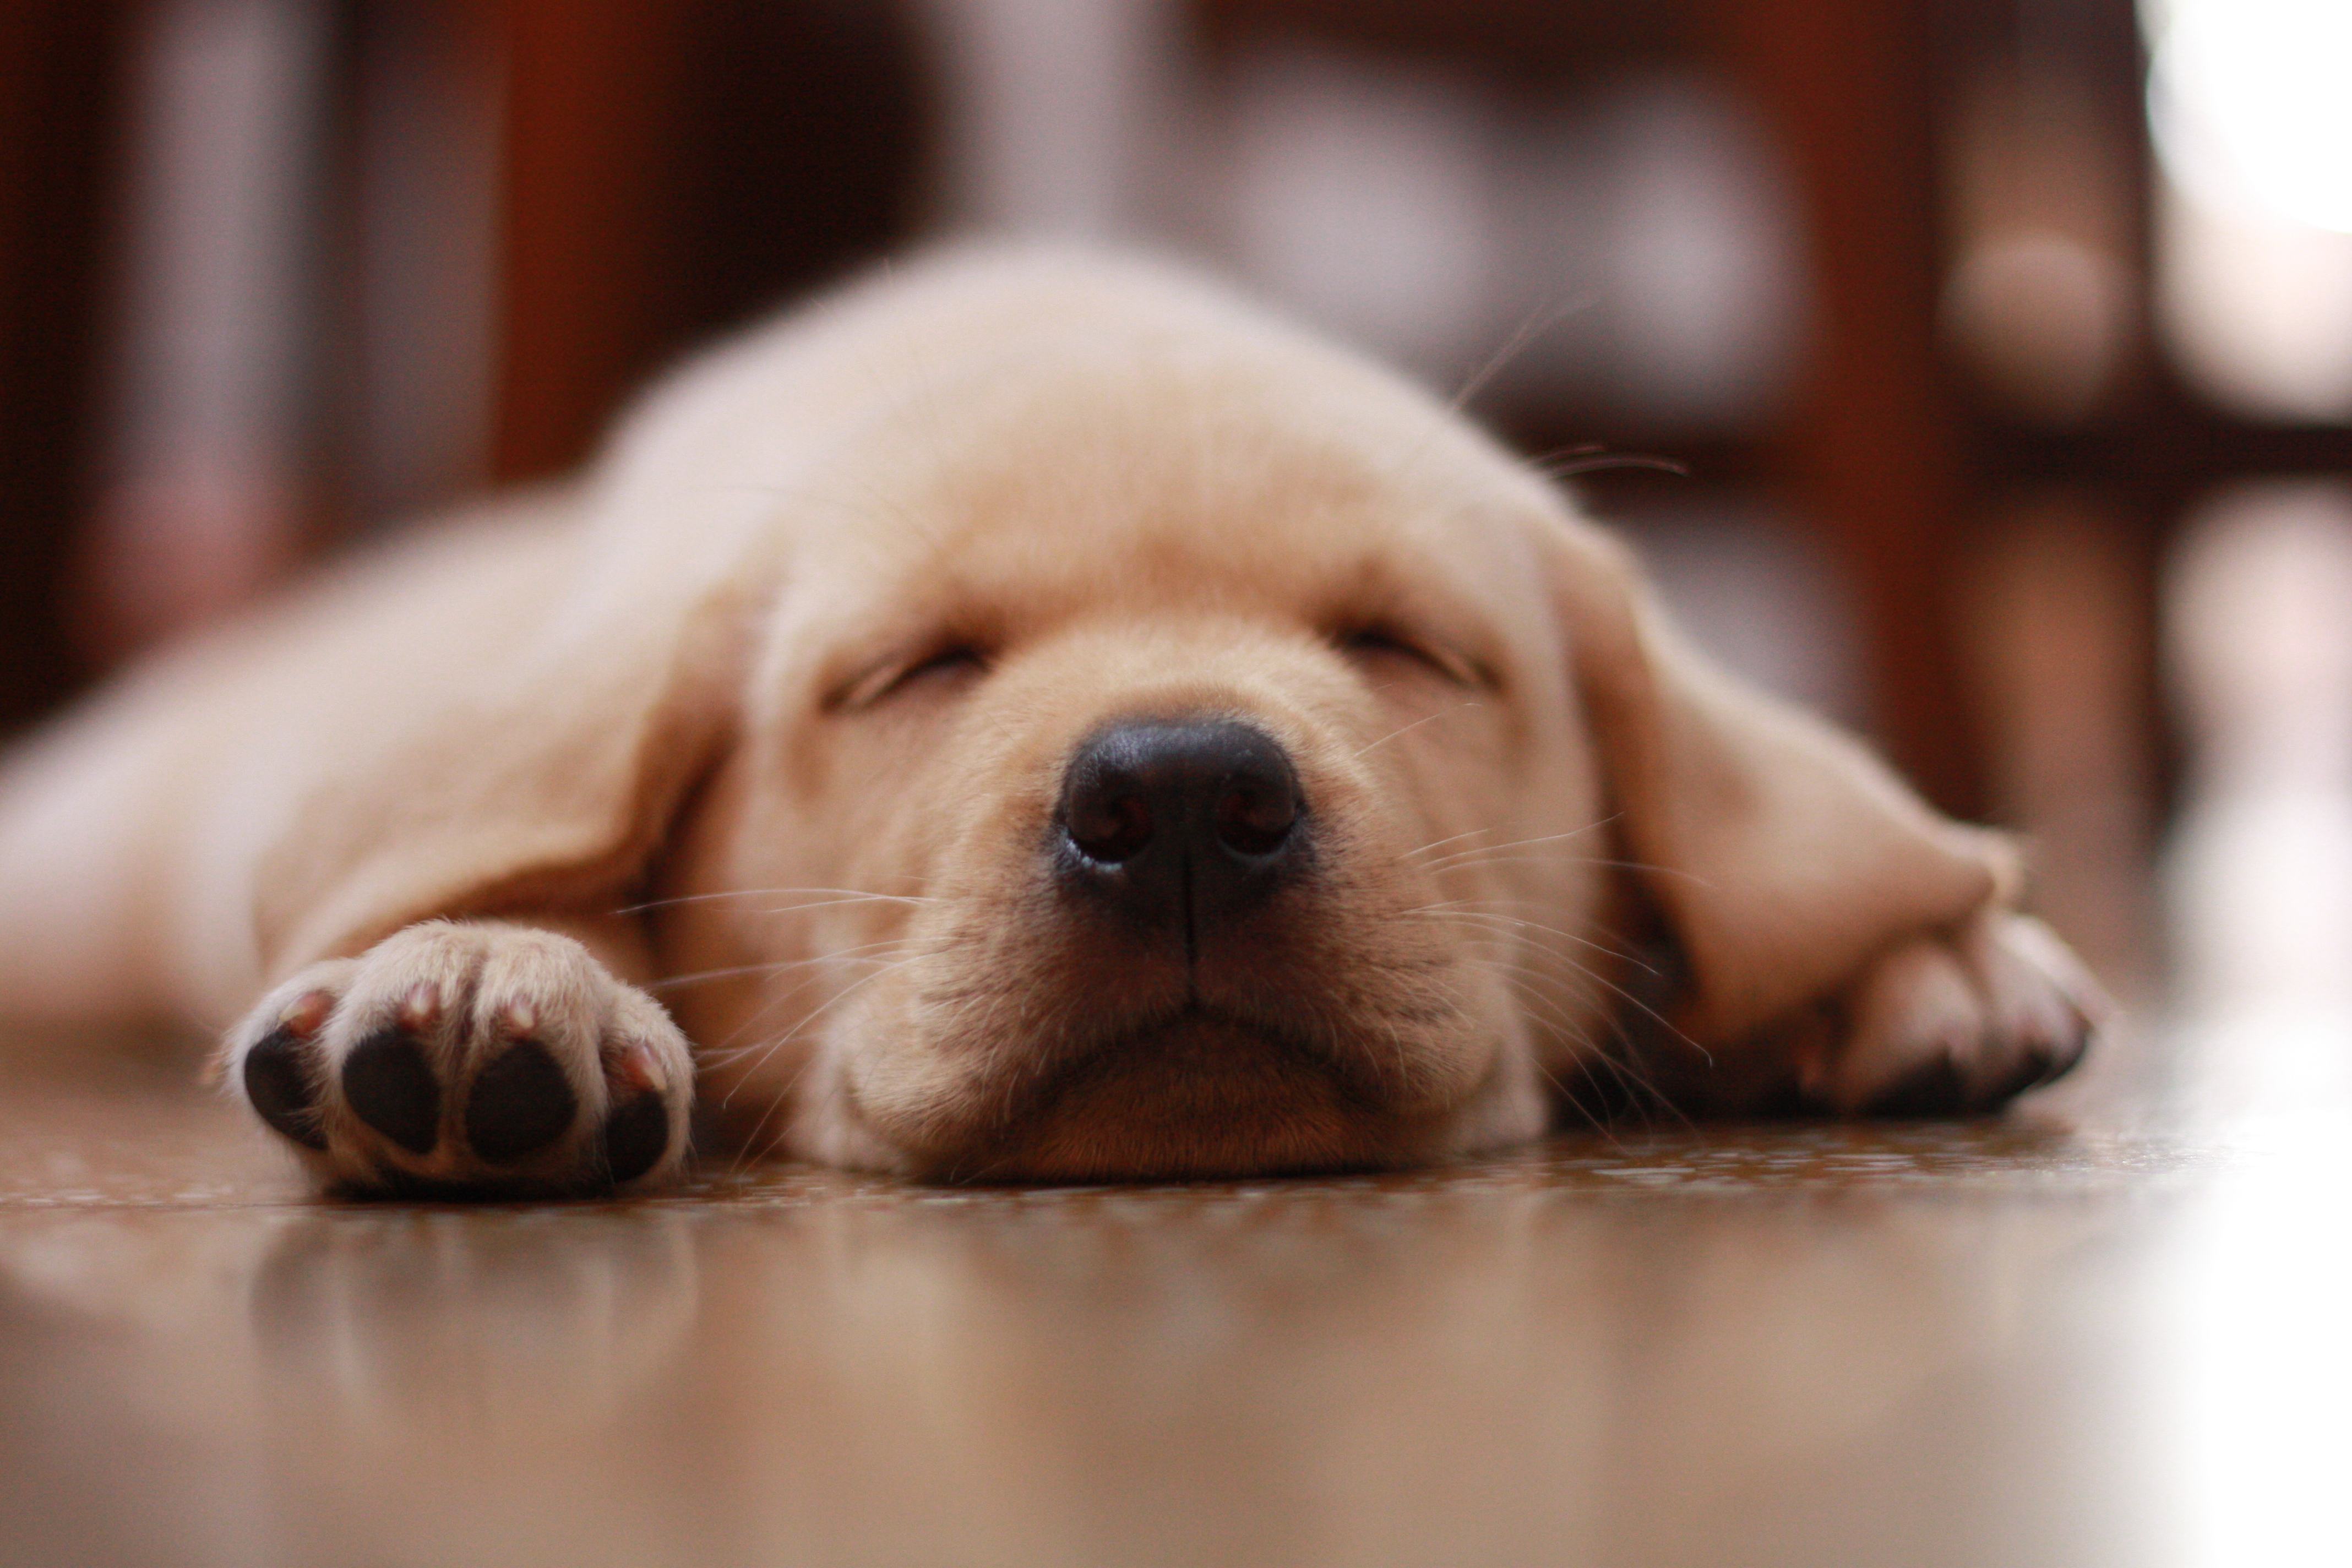 フリー画像 動物写真 哺乳類 イヌ科 犬 イヌ 子犬 寝顔 寝相 寝姿 ラブラドール レトリバー フリー素材 画像素材なら 無料 フリー写真素材のフリー フォト